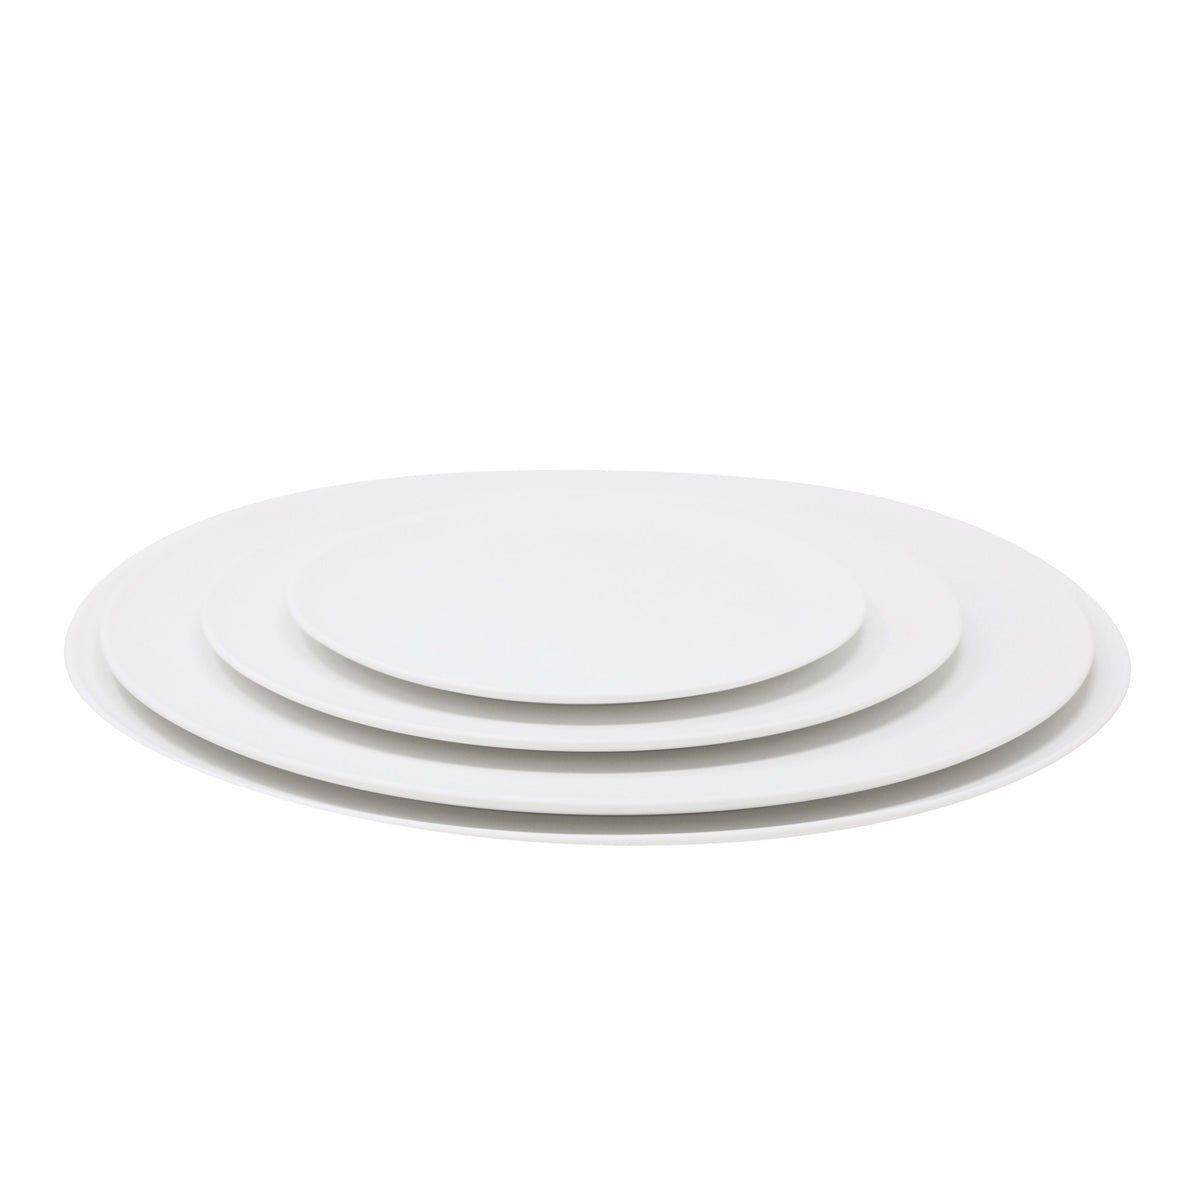 SLIM blanc satiné - Assiette plate